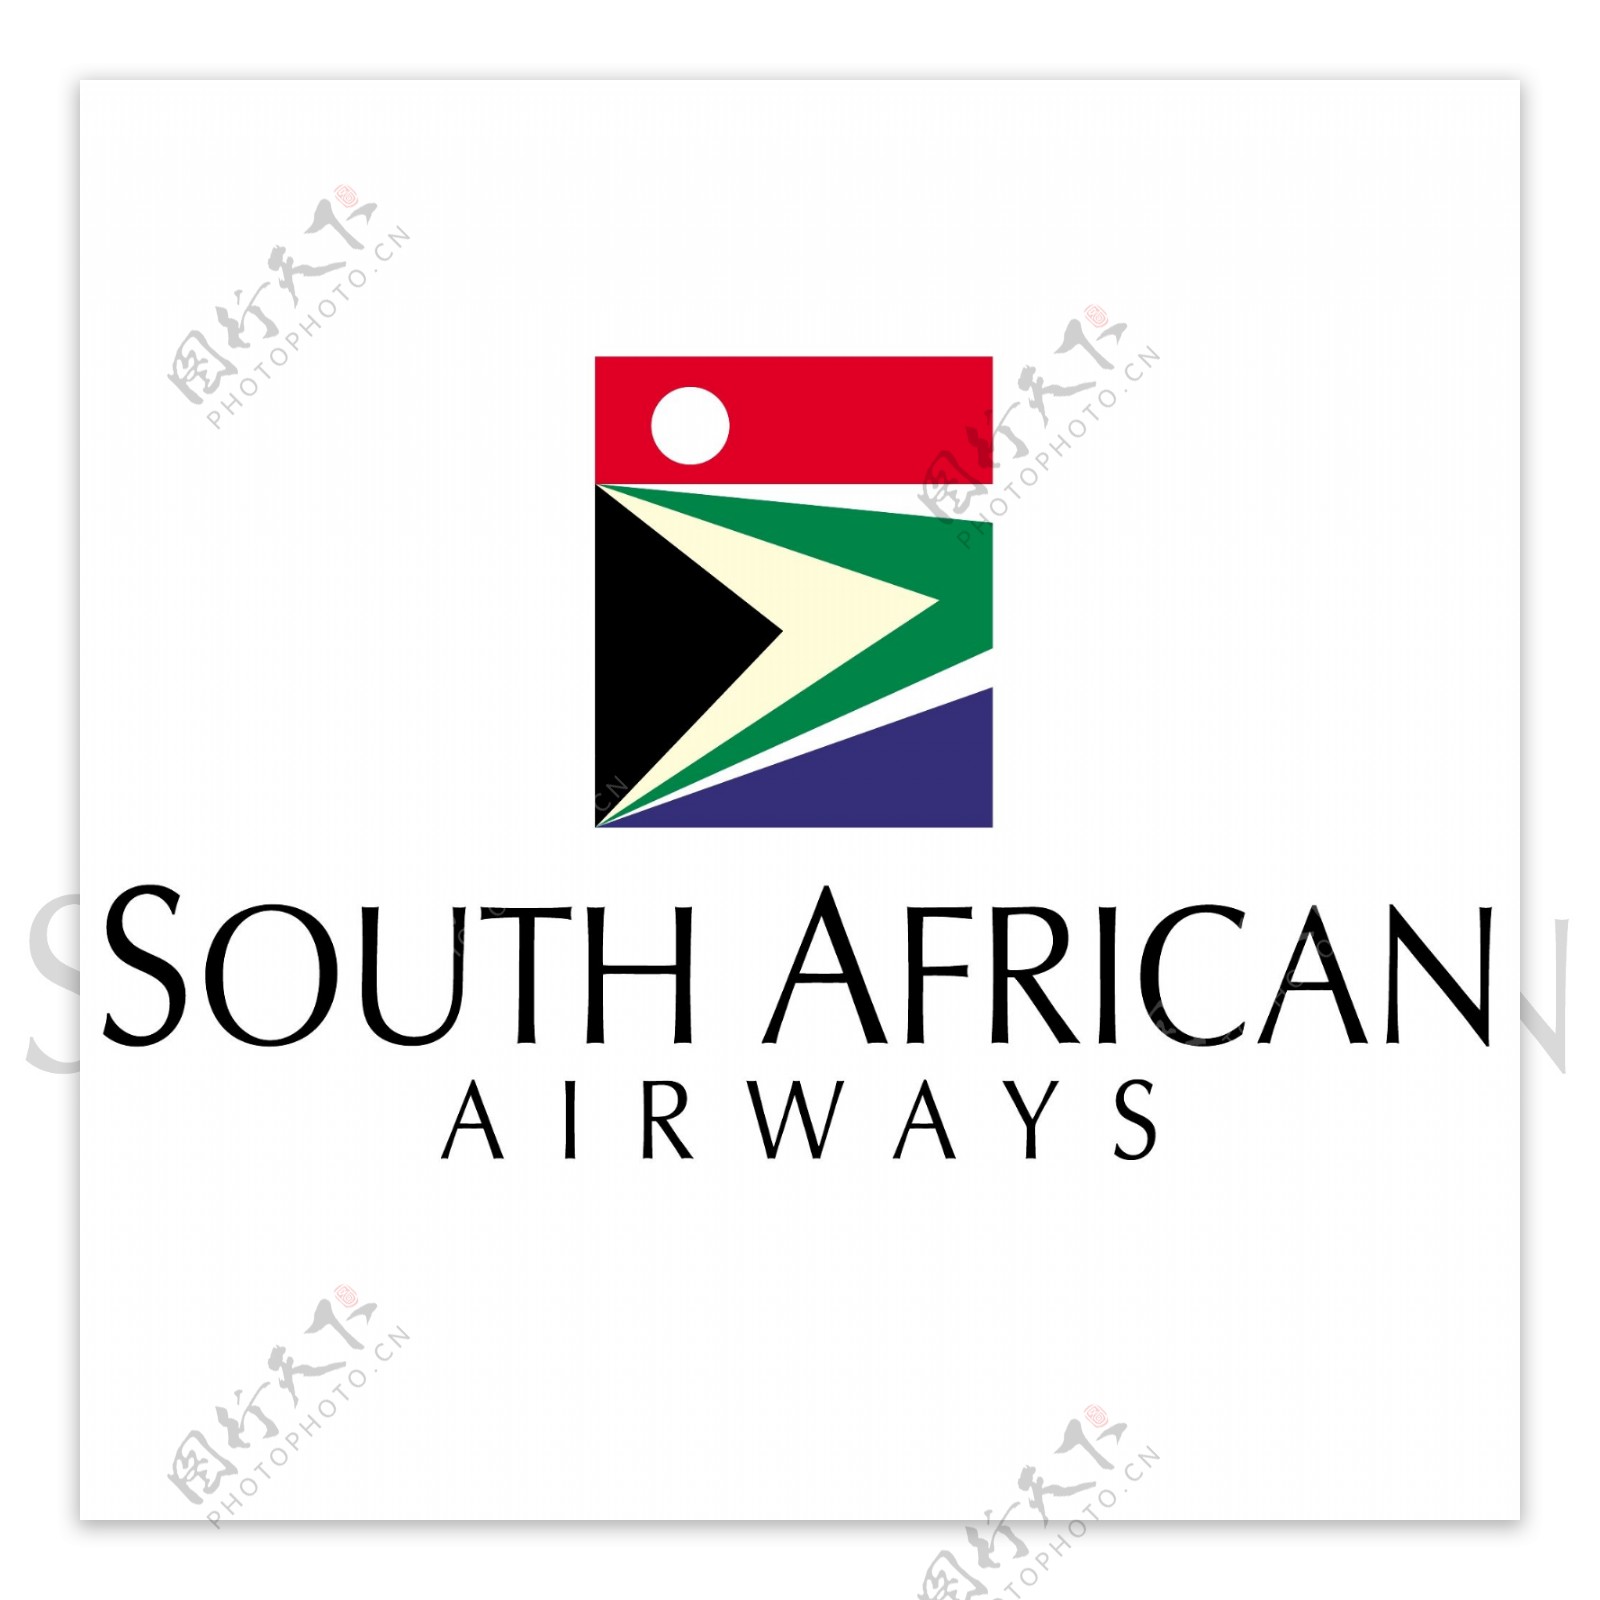 南非航空